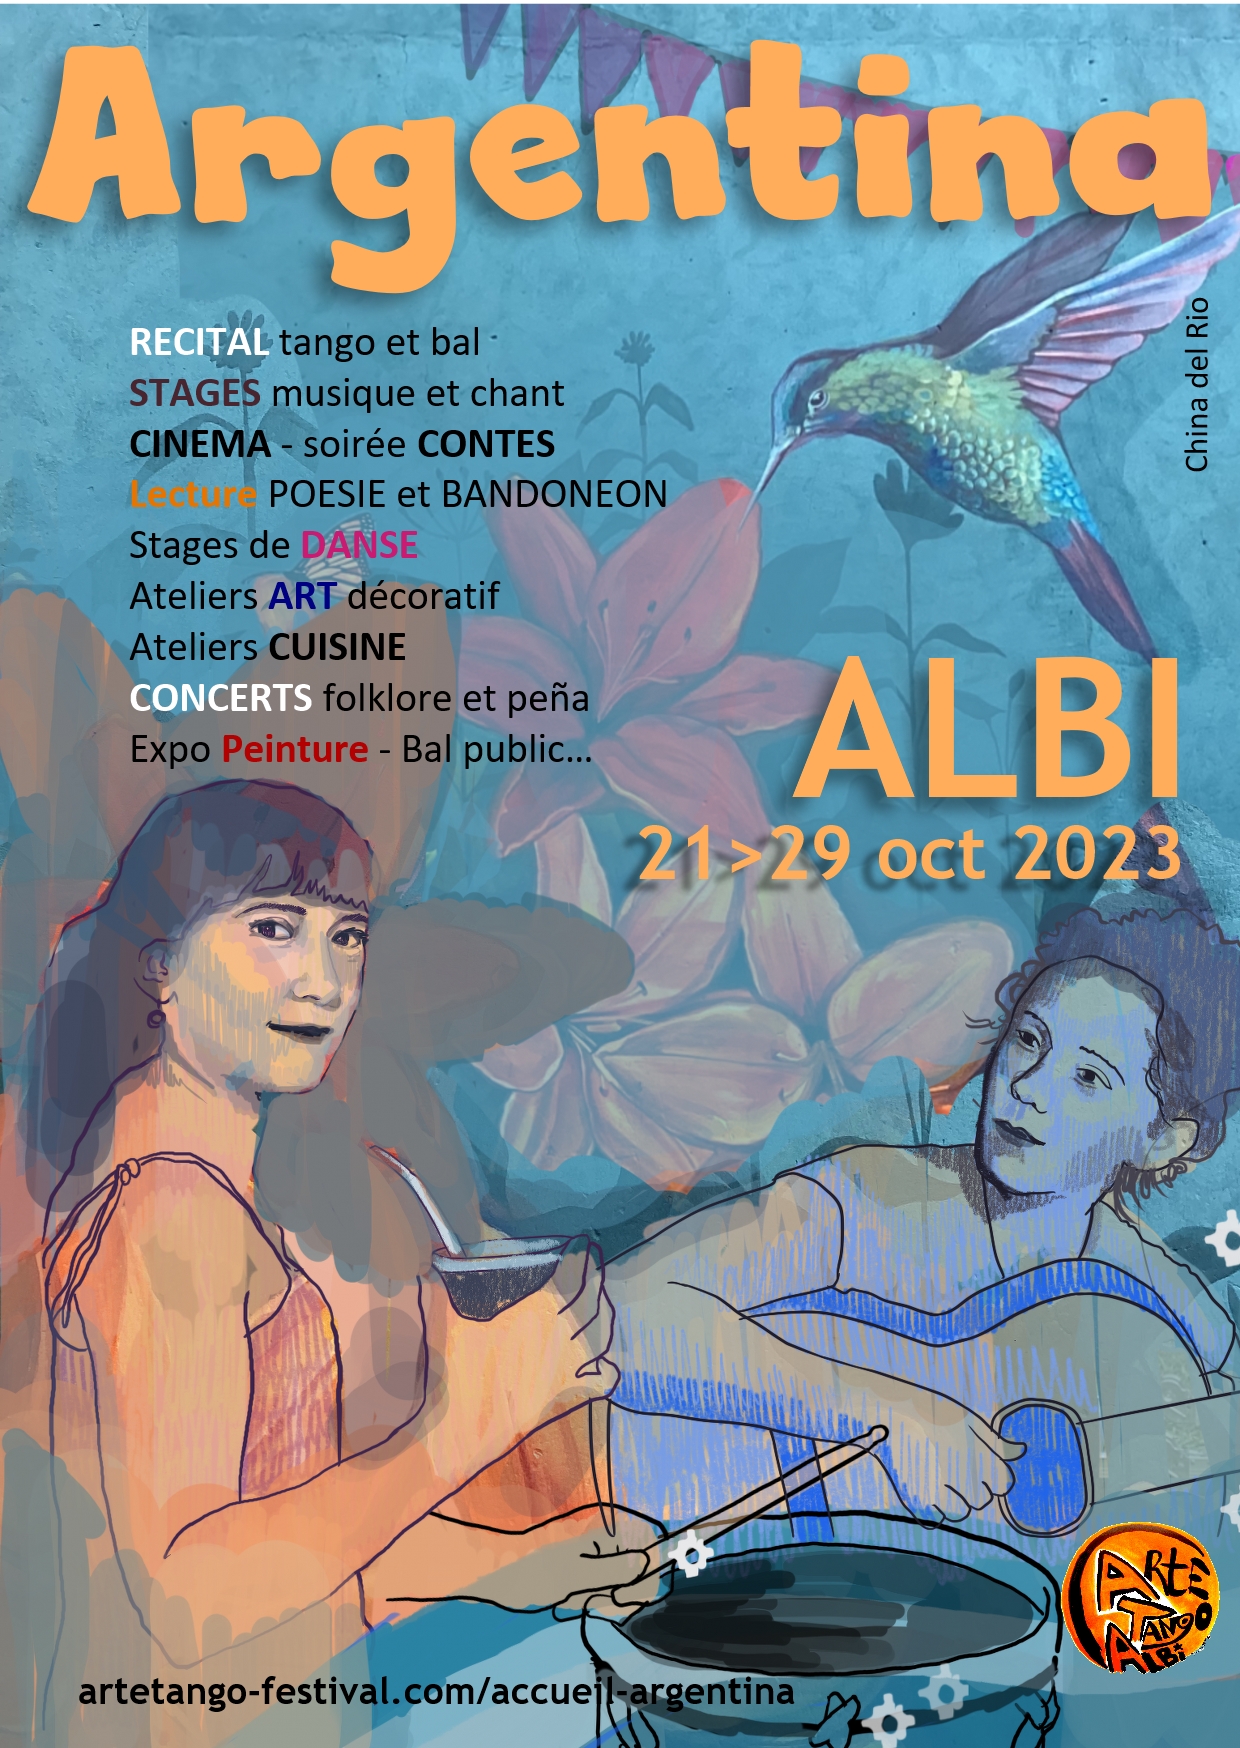 Albi - Argentina Fest